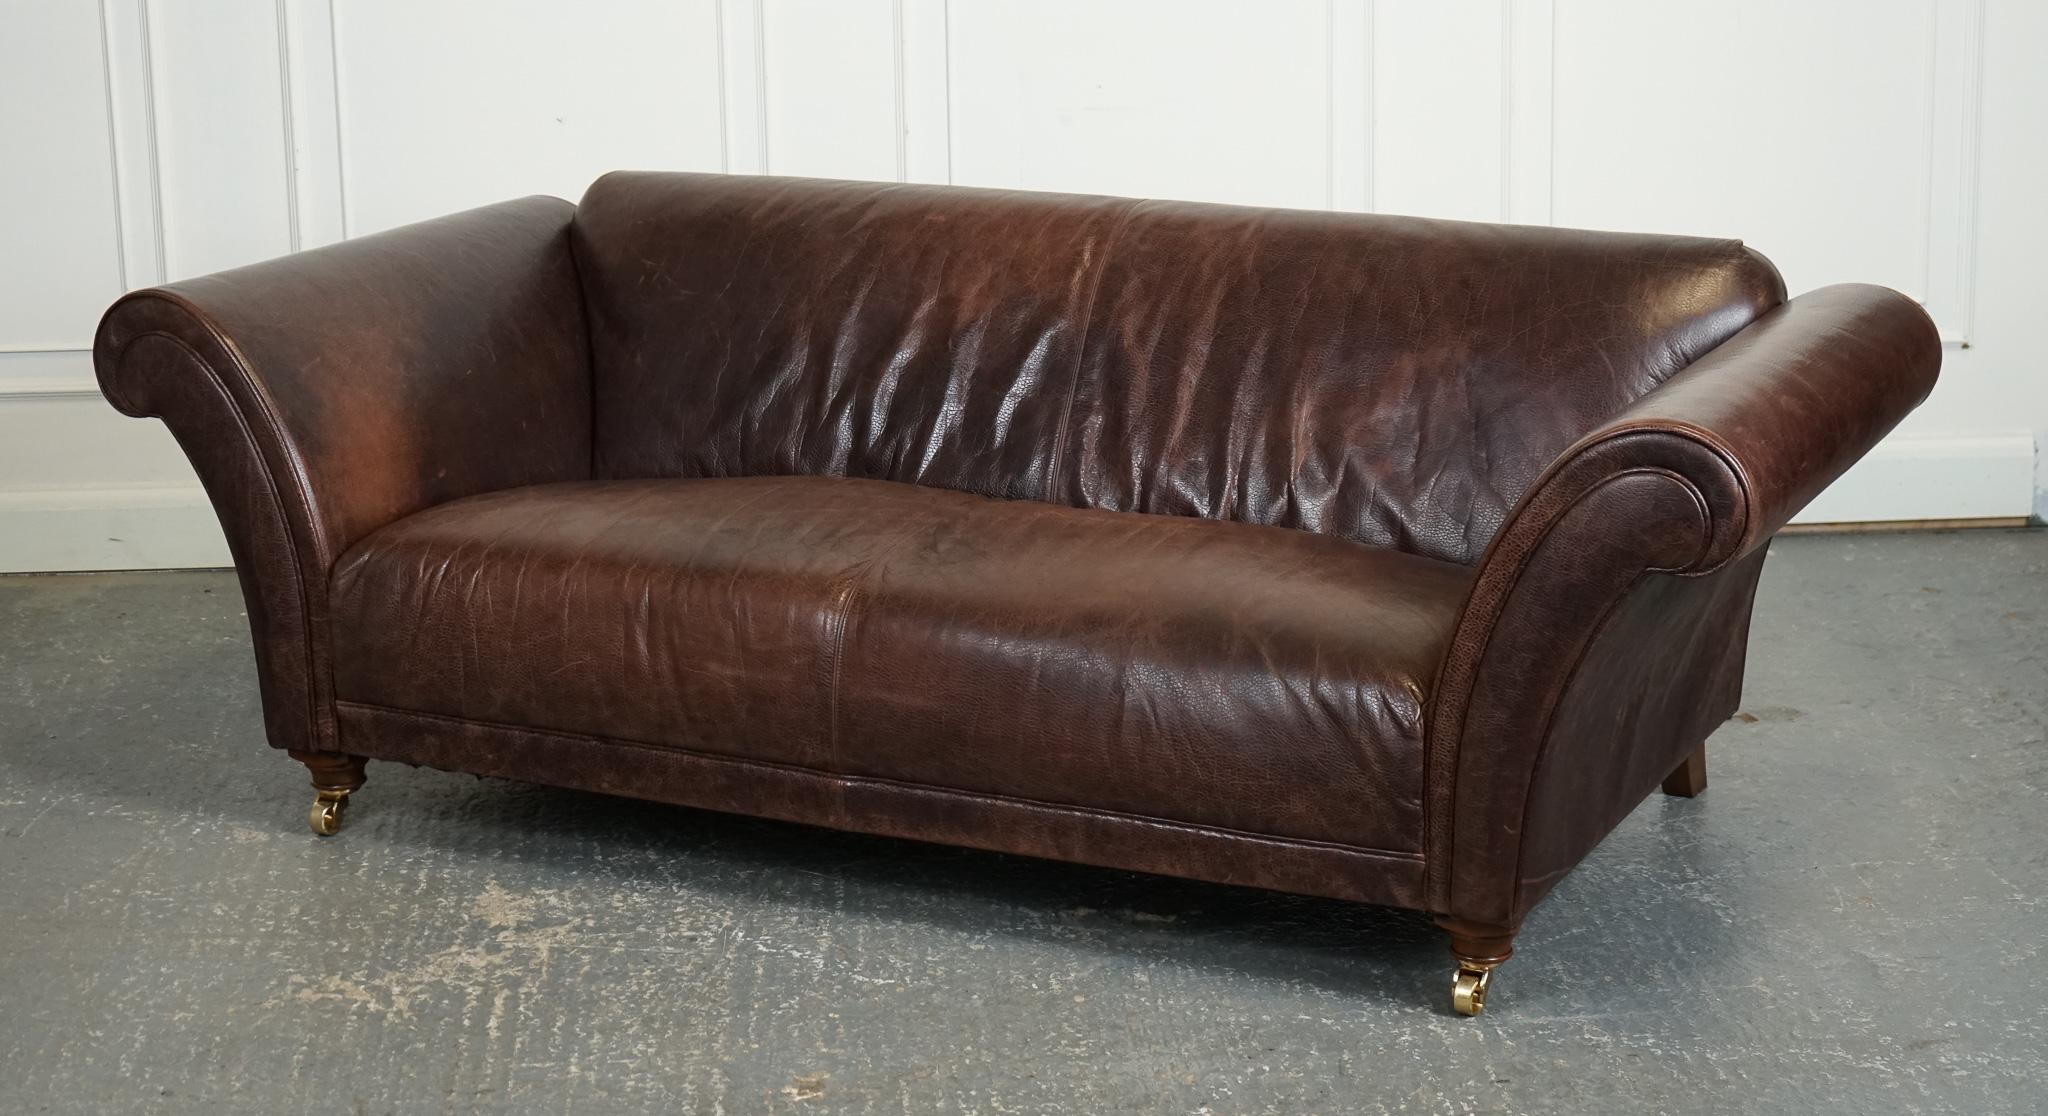 

Nous sommes ravis d'offrir à la vente ce magnifique canapé en cuir Heritage Brown de Fishpools.

Ce magnifique canapé Fishpools Heritage est un must pour tout amateur de décoration intérieure. Le riche revêtement en cuir marron ajoute une touche